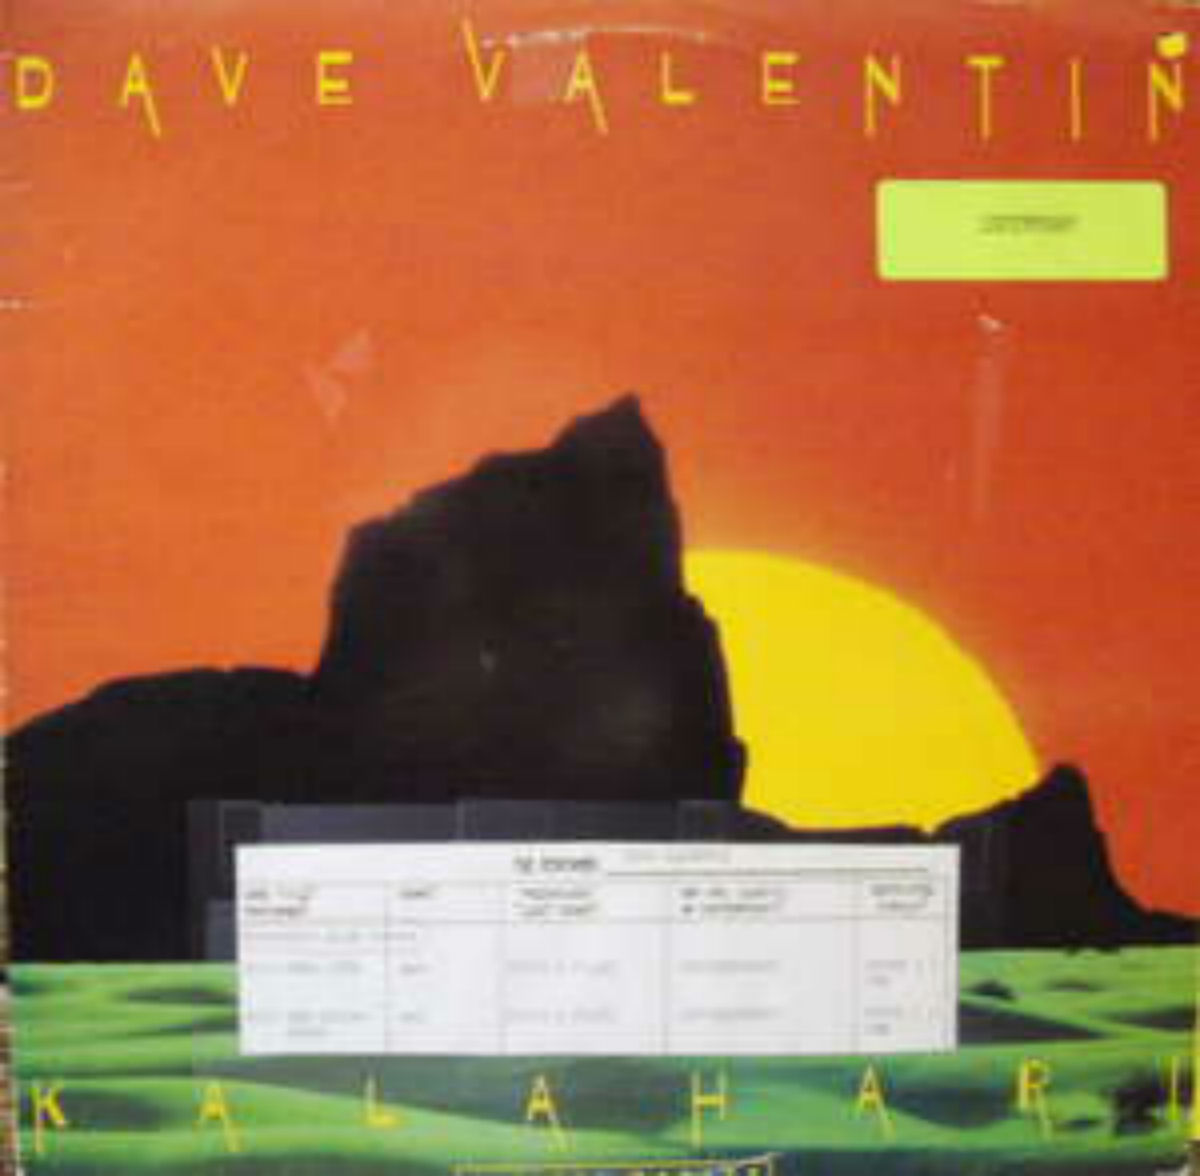 Dave Valentin / Kalahari